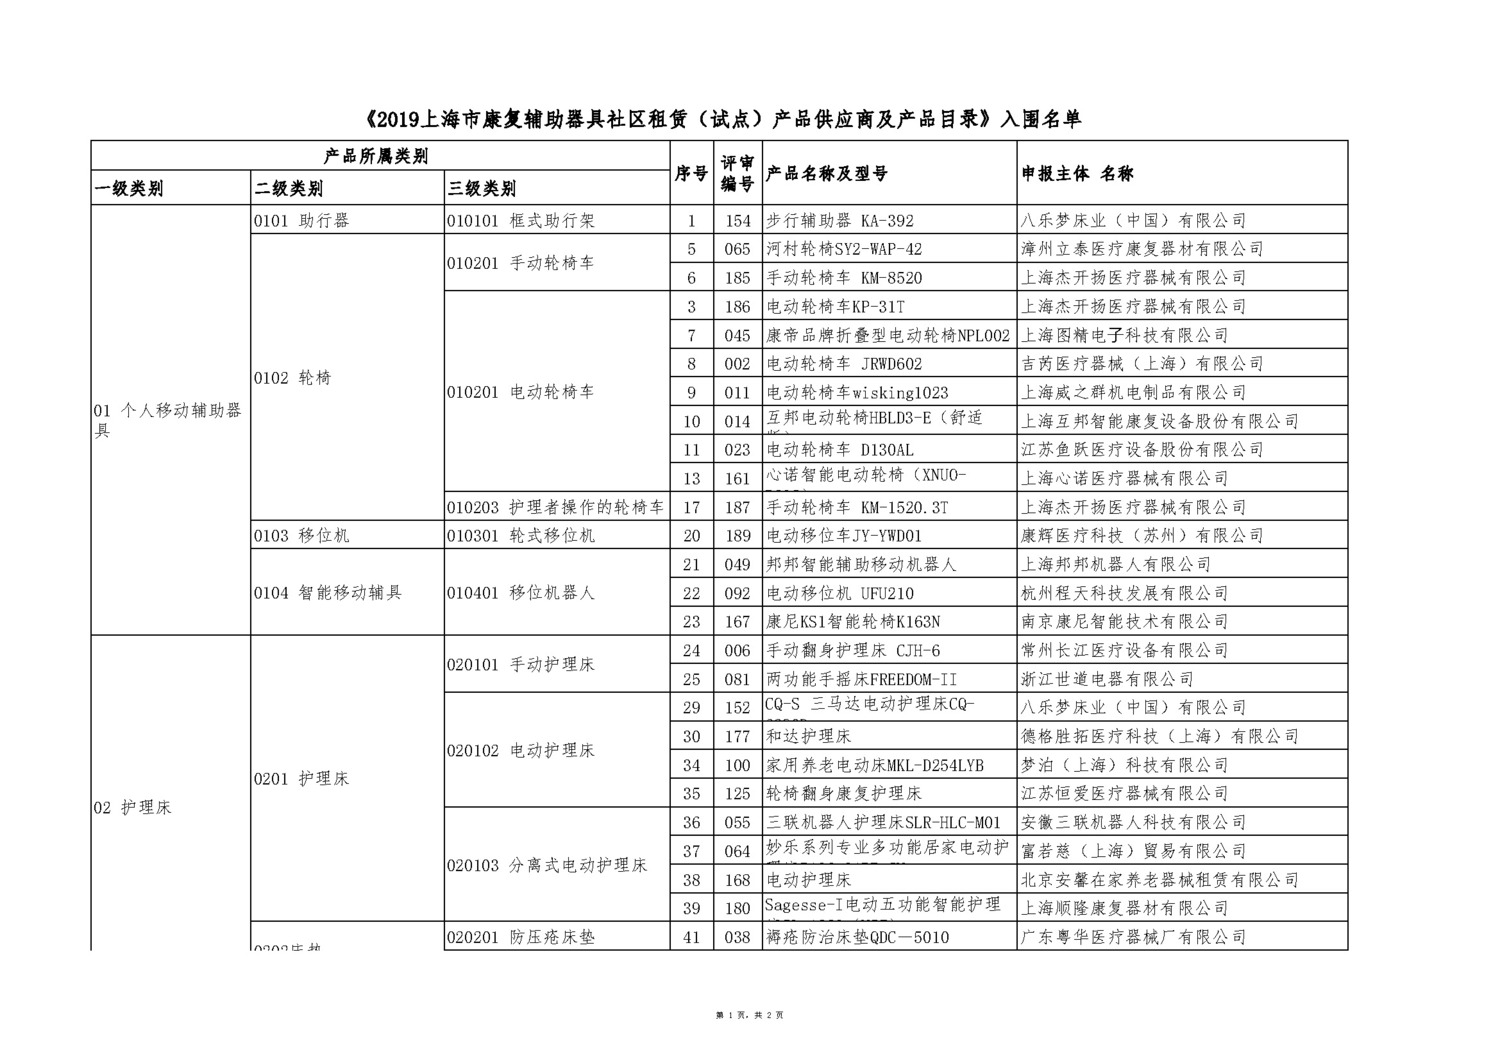 上海辅具租赁产品供应商及产品目录入围名单 20190925_页面_2_页面_1.jpg